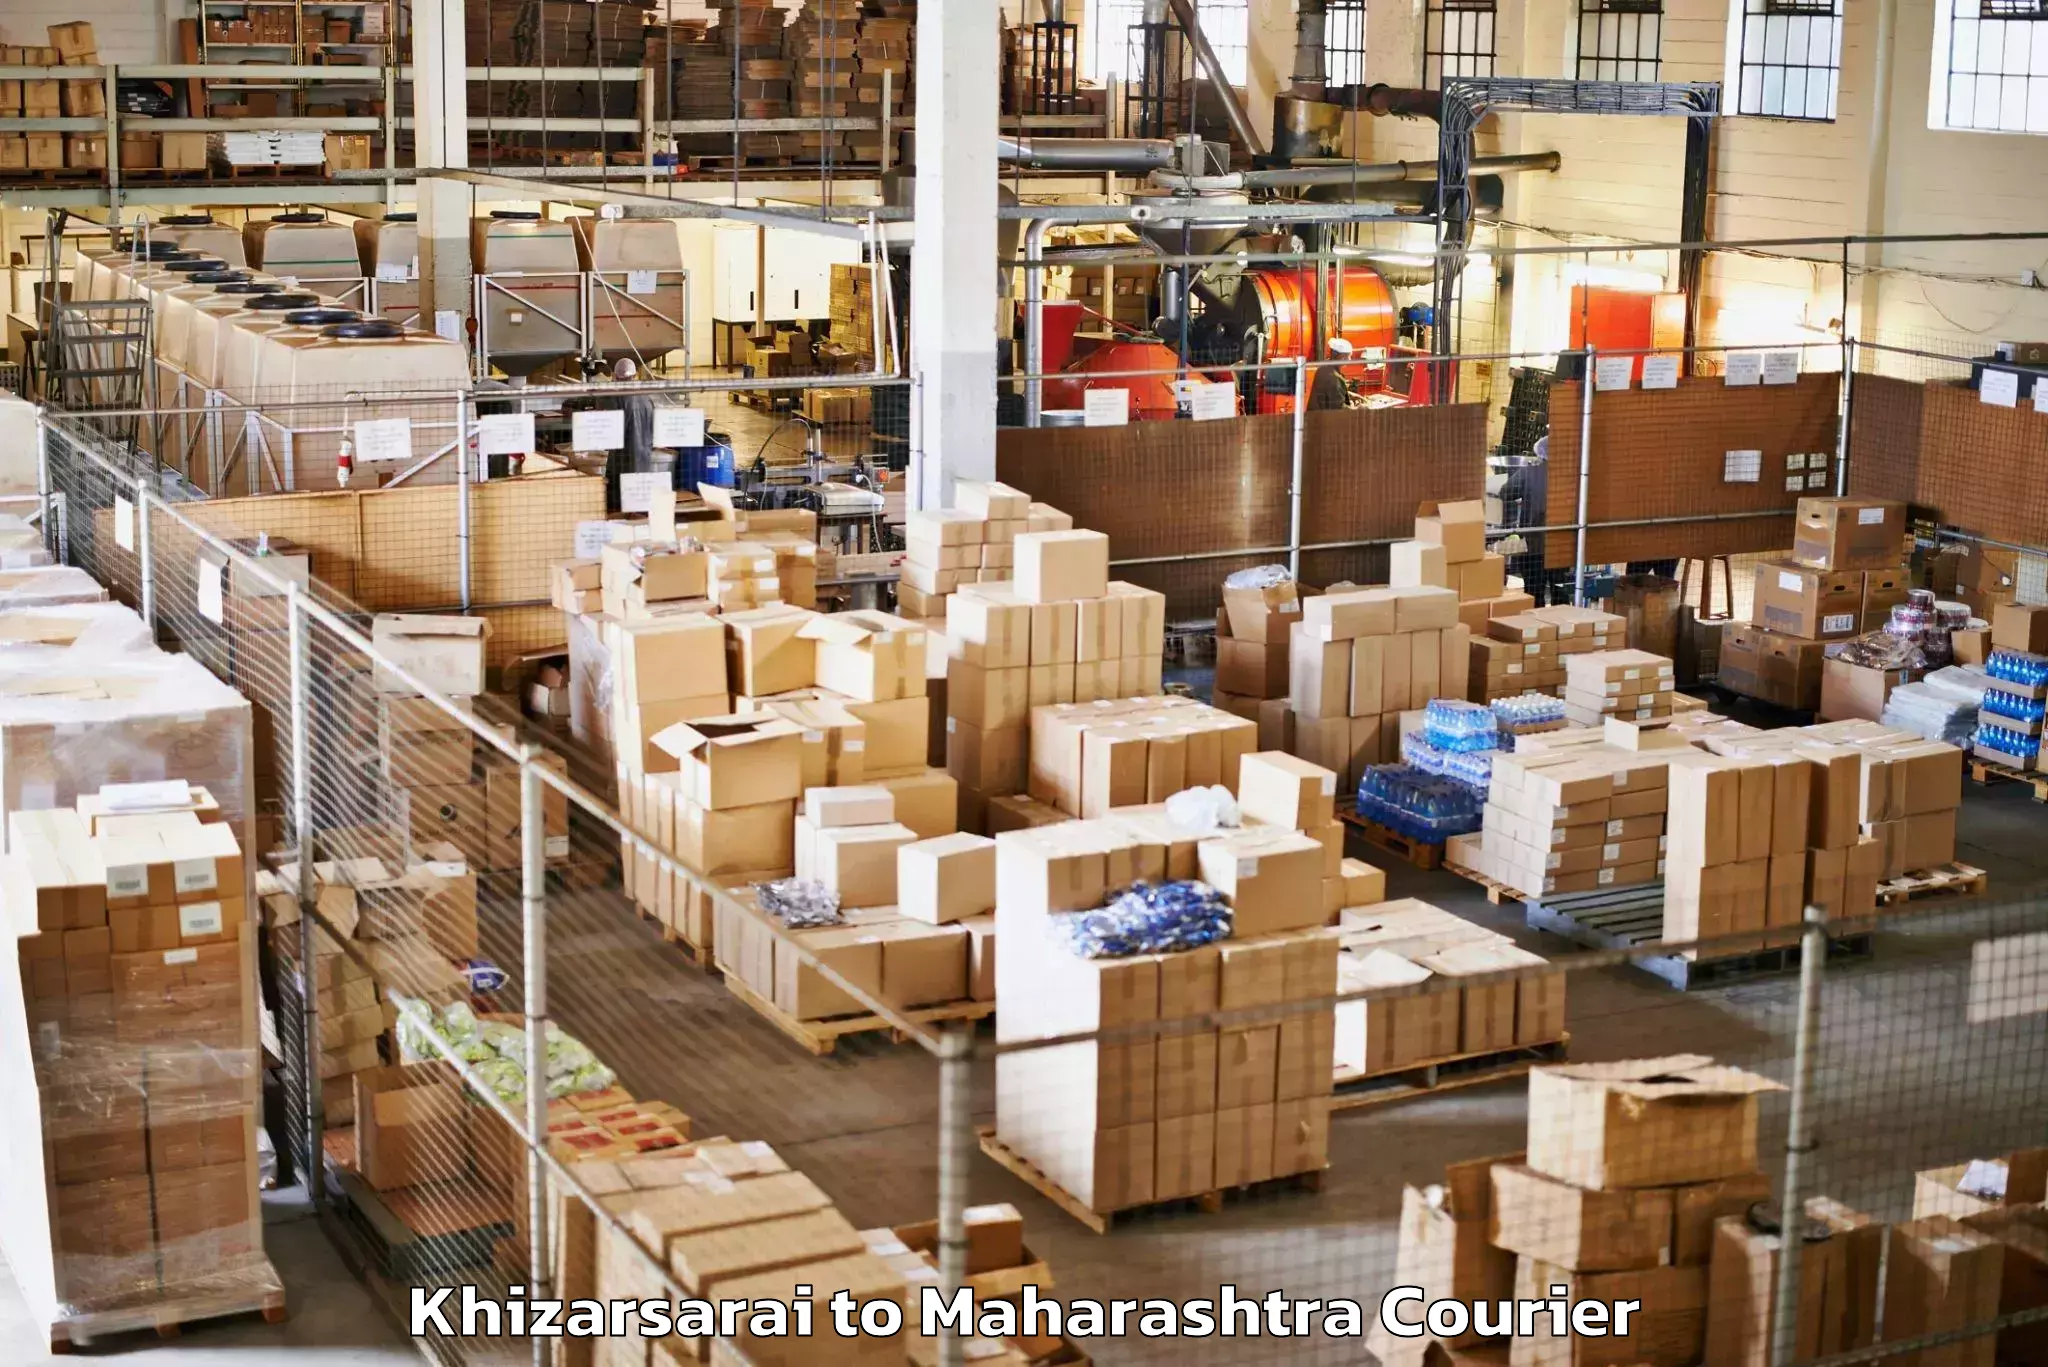 Door-to-door baggage service Khizarsarai to IIIT Pune